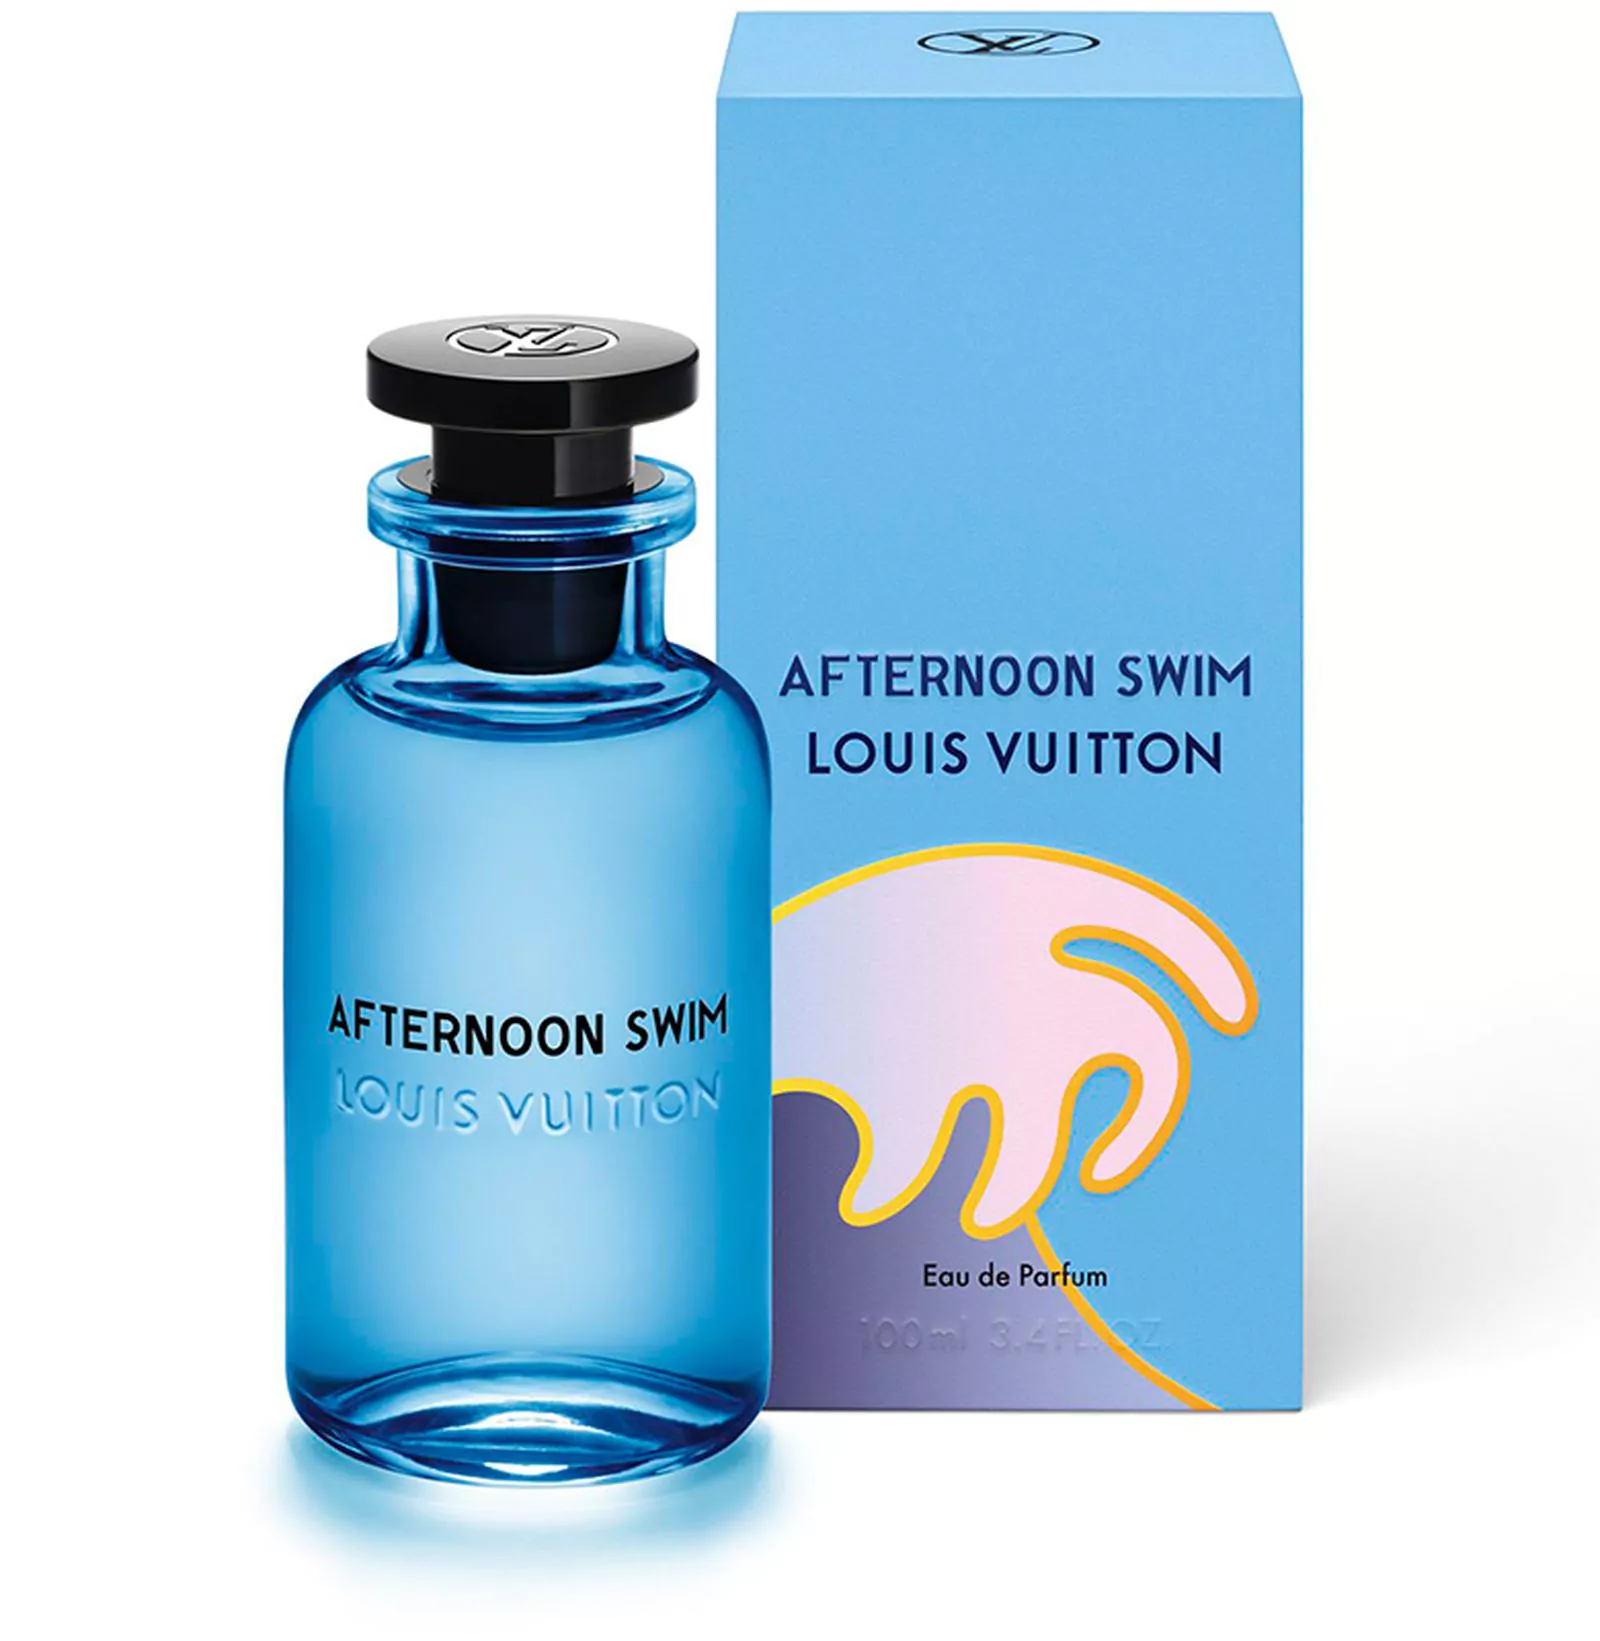 Louis Vuitton, Afternoon Swim